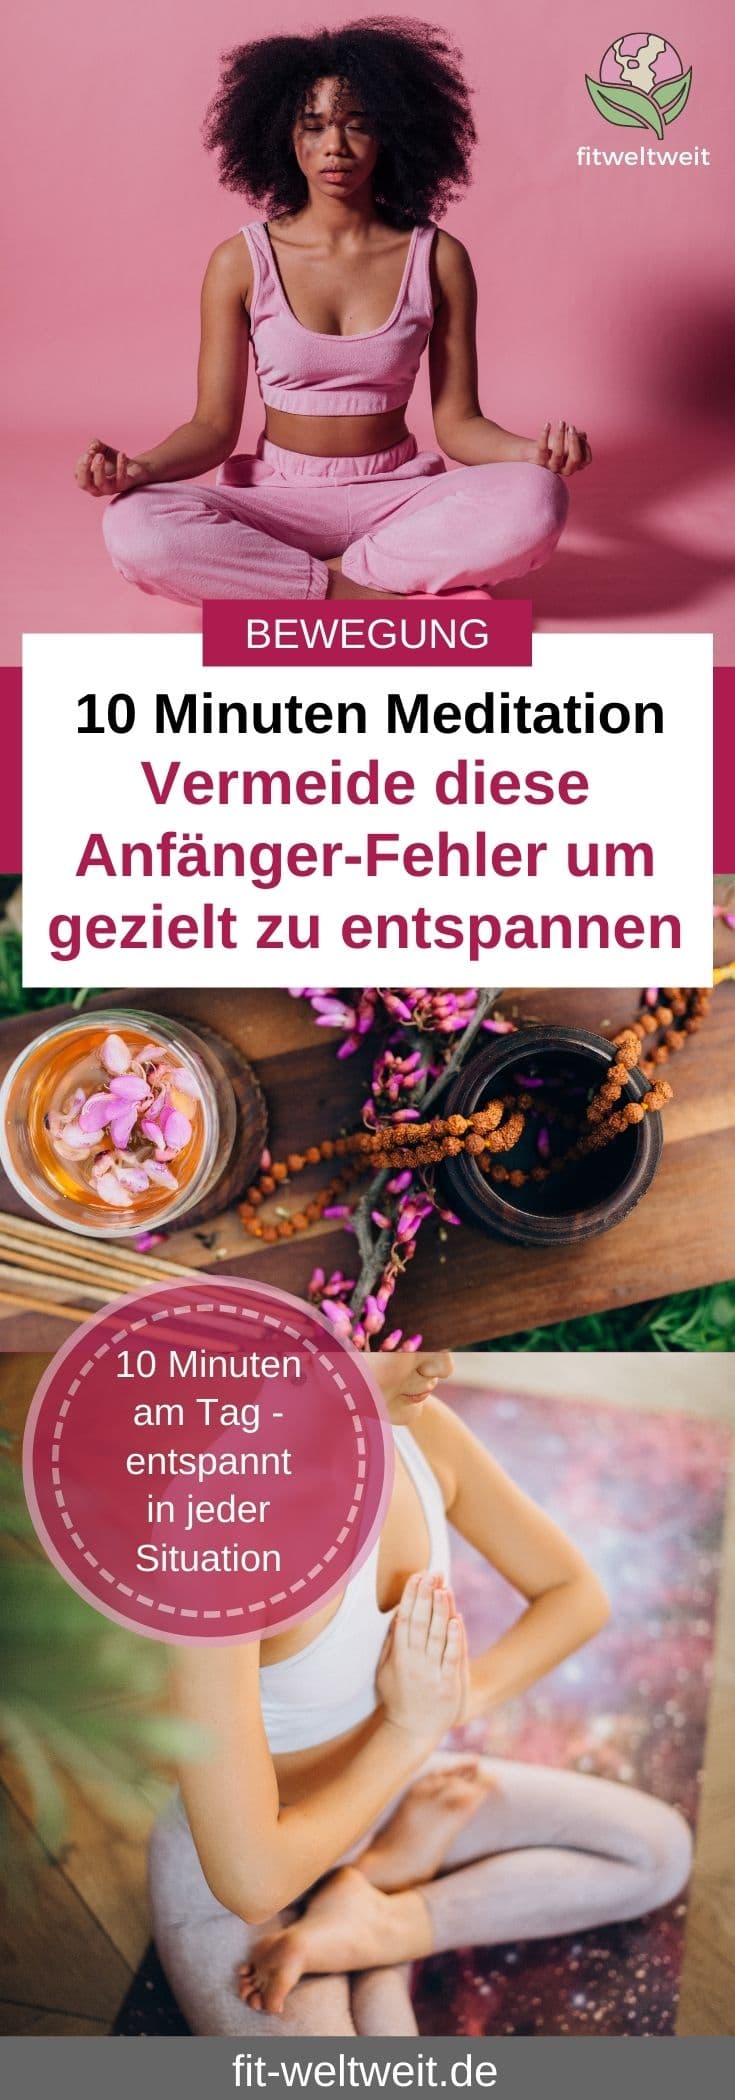 10 Minuten Meditation in den Flow kommen und entspannen Tipps